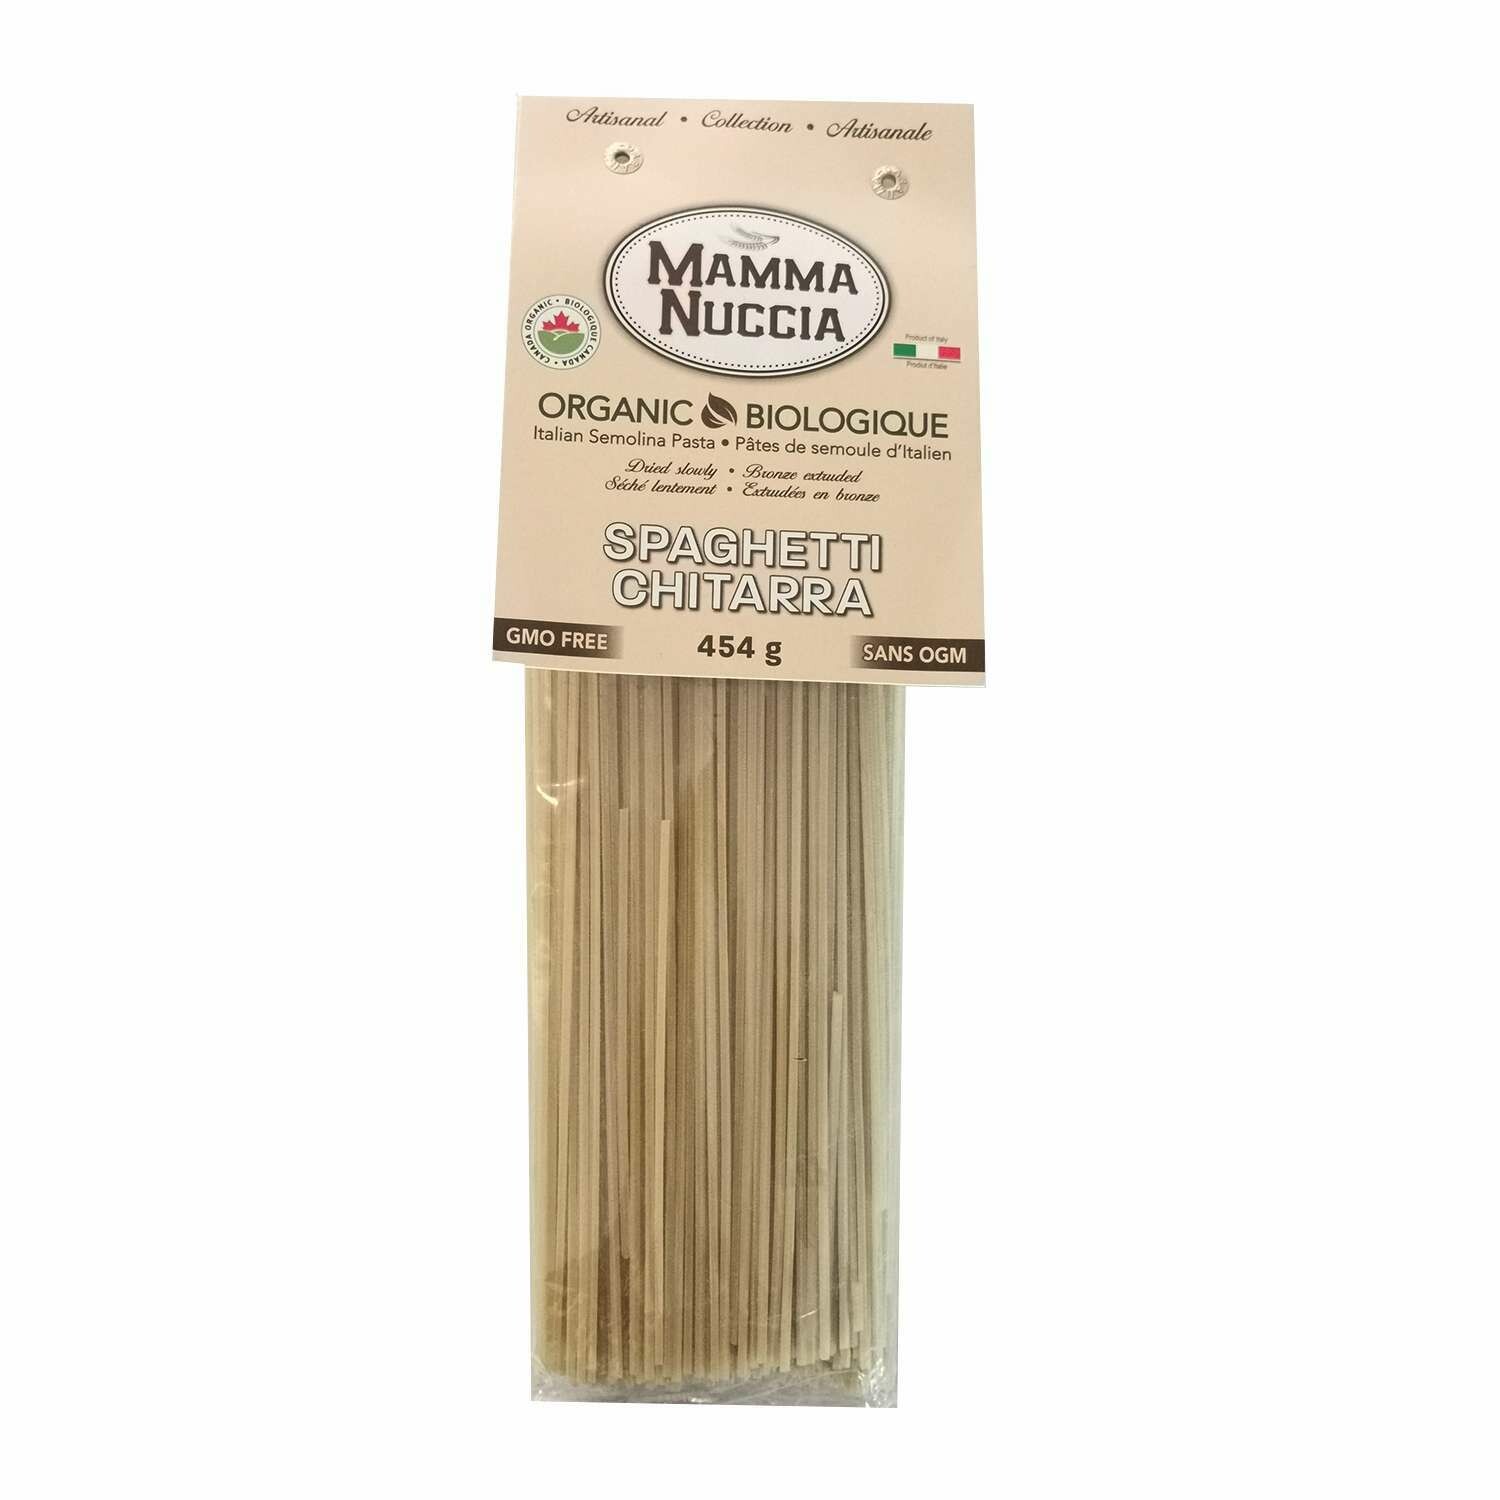 Mamma Nuccia - Spaghetti Chitarra (454g)